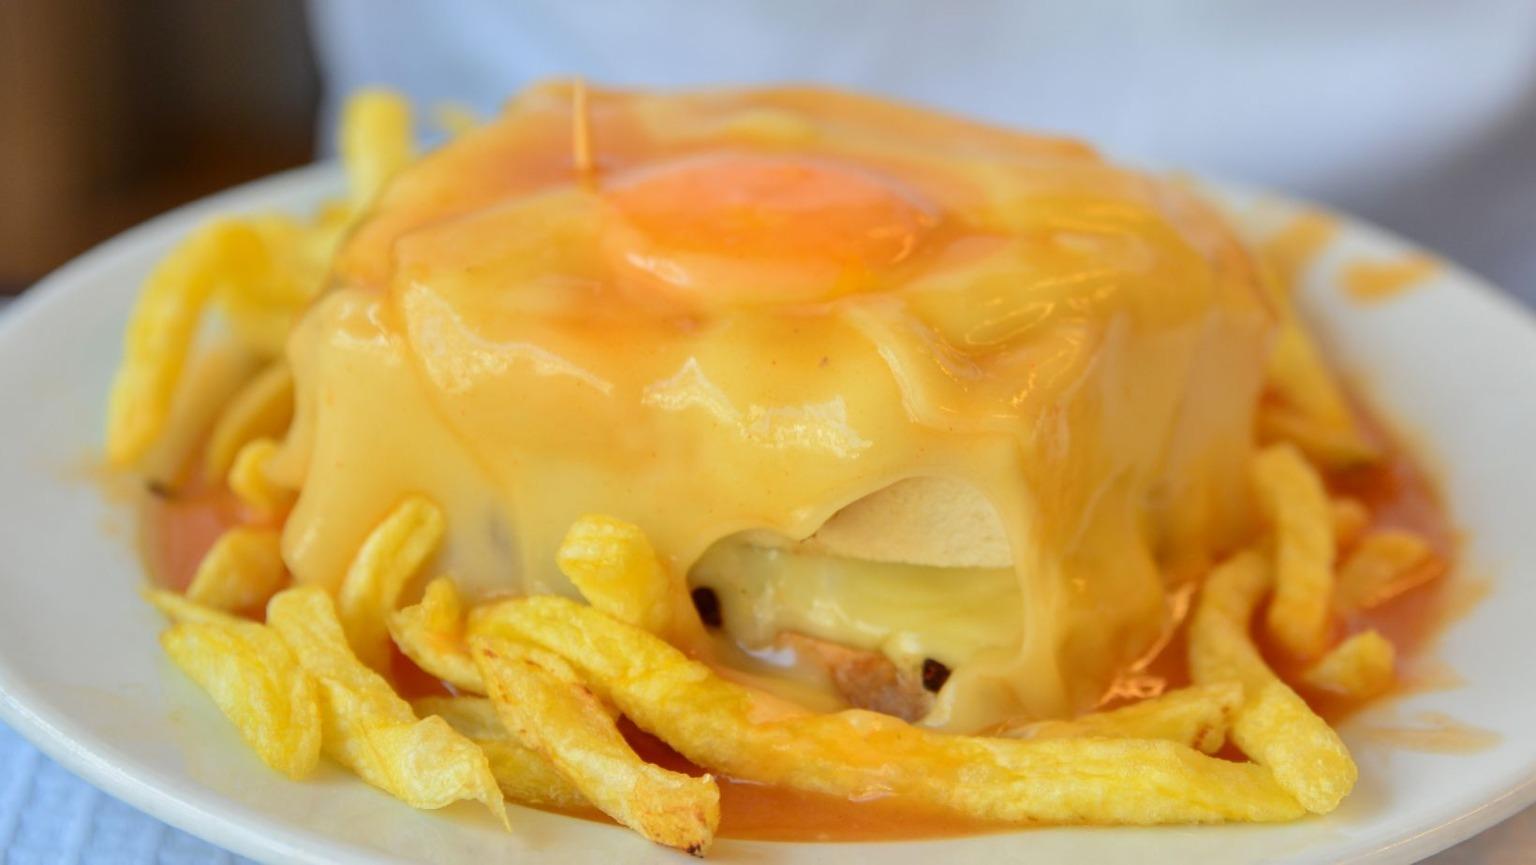 Une assiette grésillante avec un sandwich Francesinha appétissant, garni de fromage fondu, d'un œuf au plat et nappé d'une sauce tomate riche et épicée.